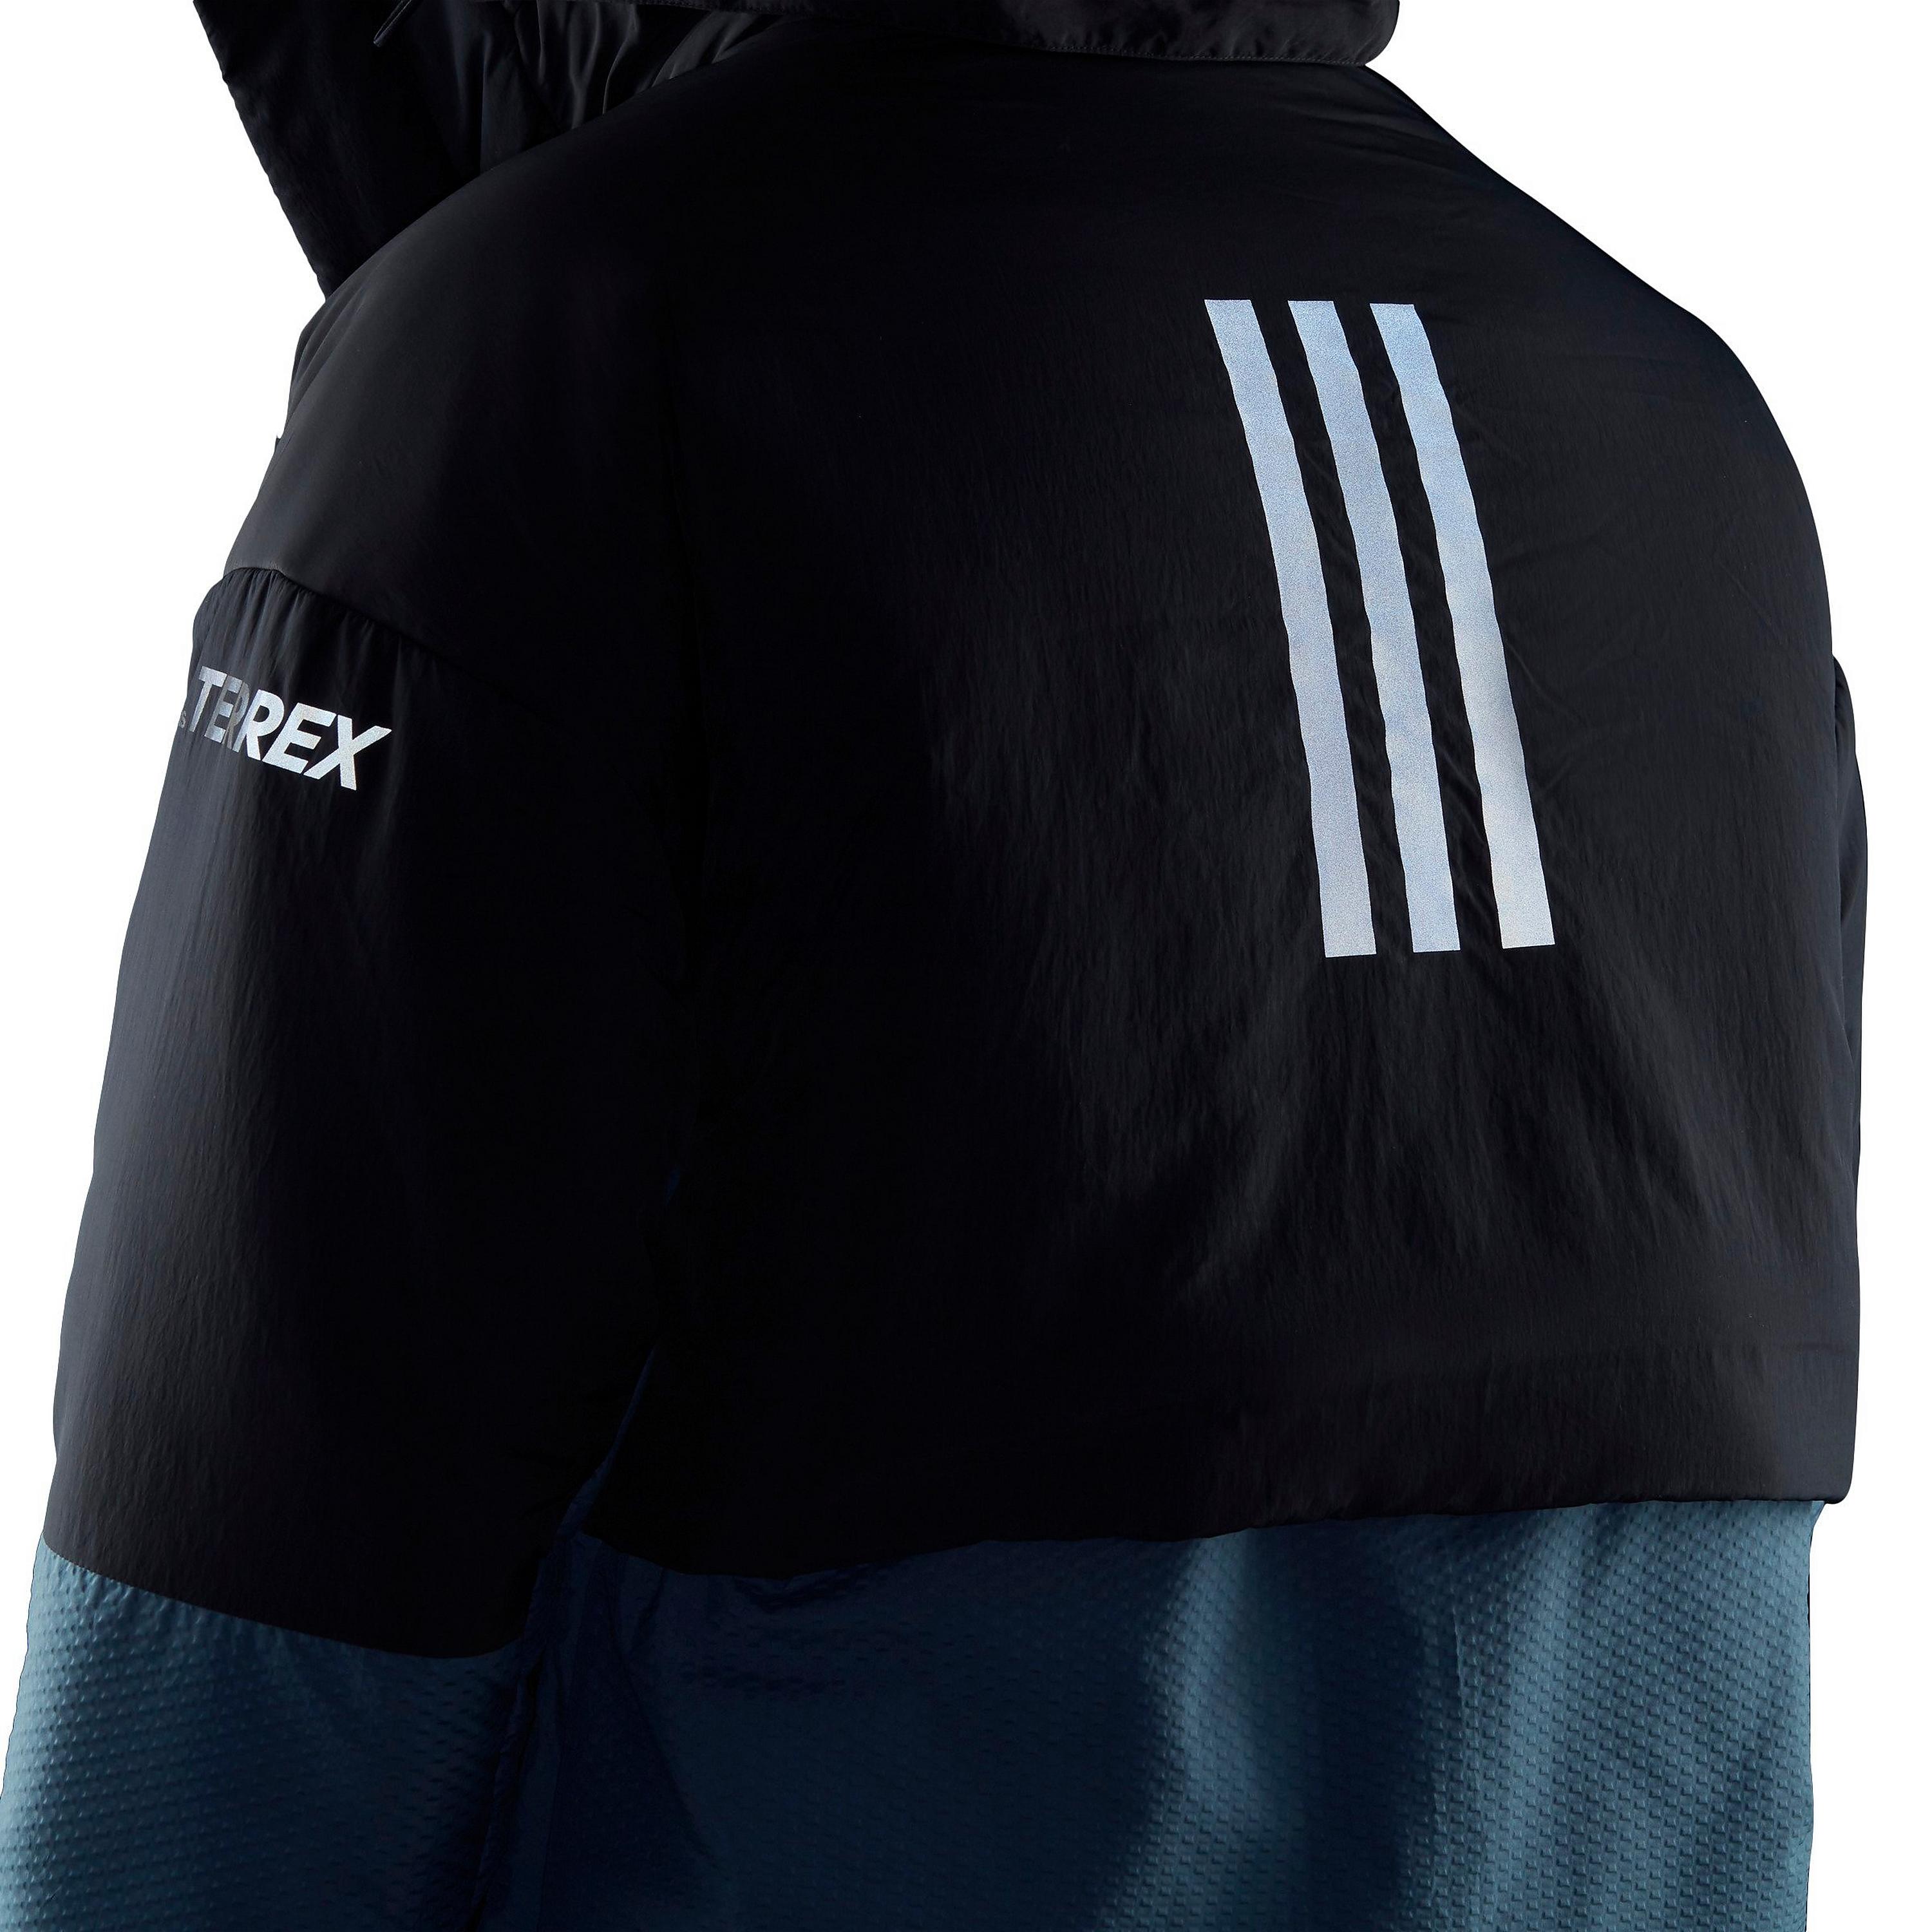 Заказать Мужская куртка Adidas Terrex MYSHELTER COLD.RDY, синий – цены, описание и характеристики в «CDEK.Shopping»